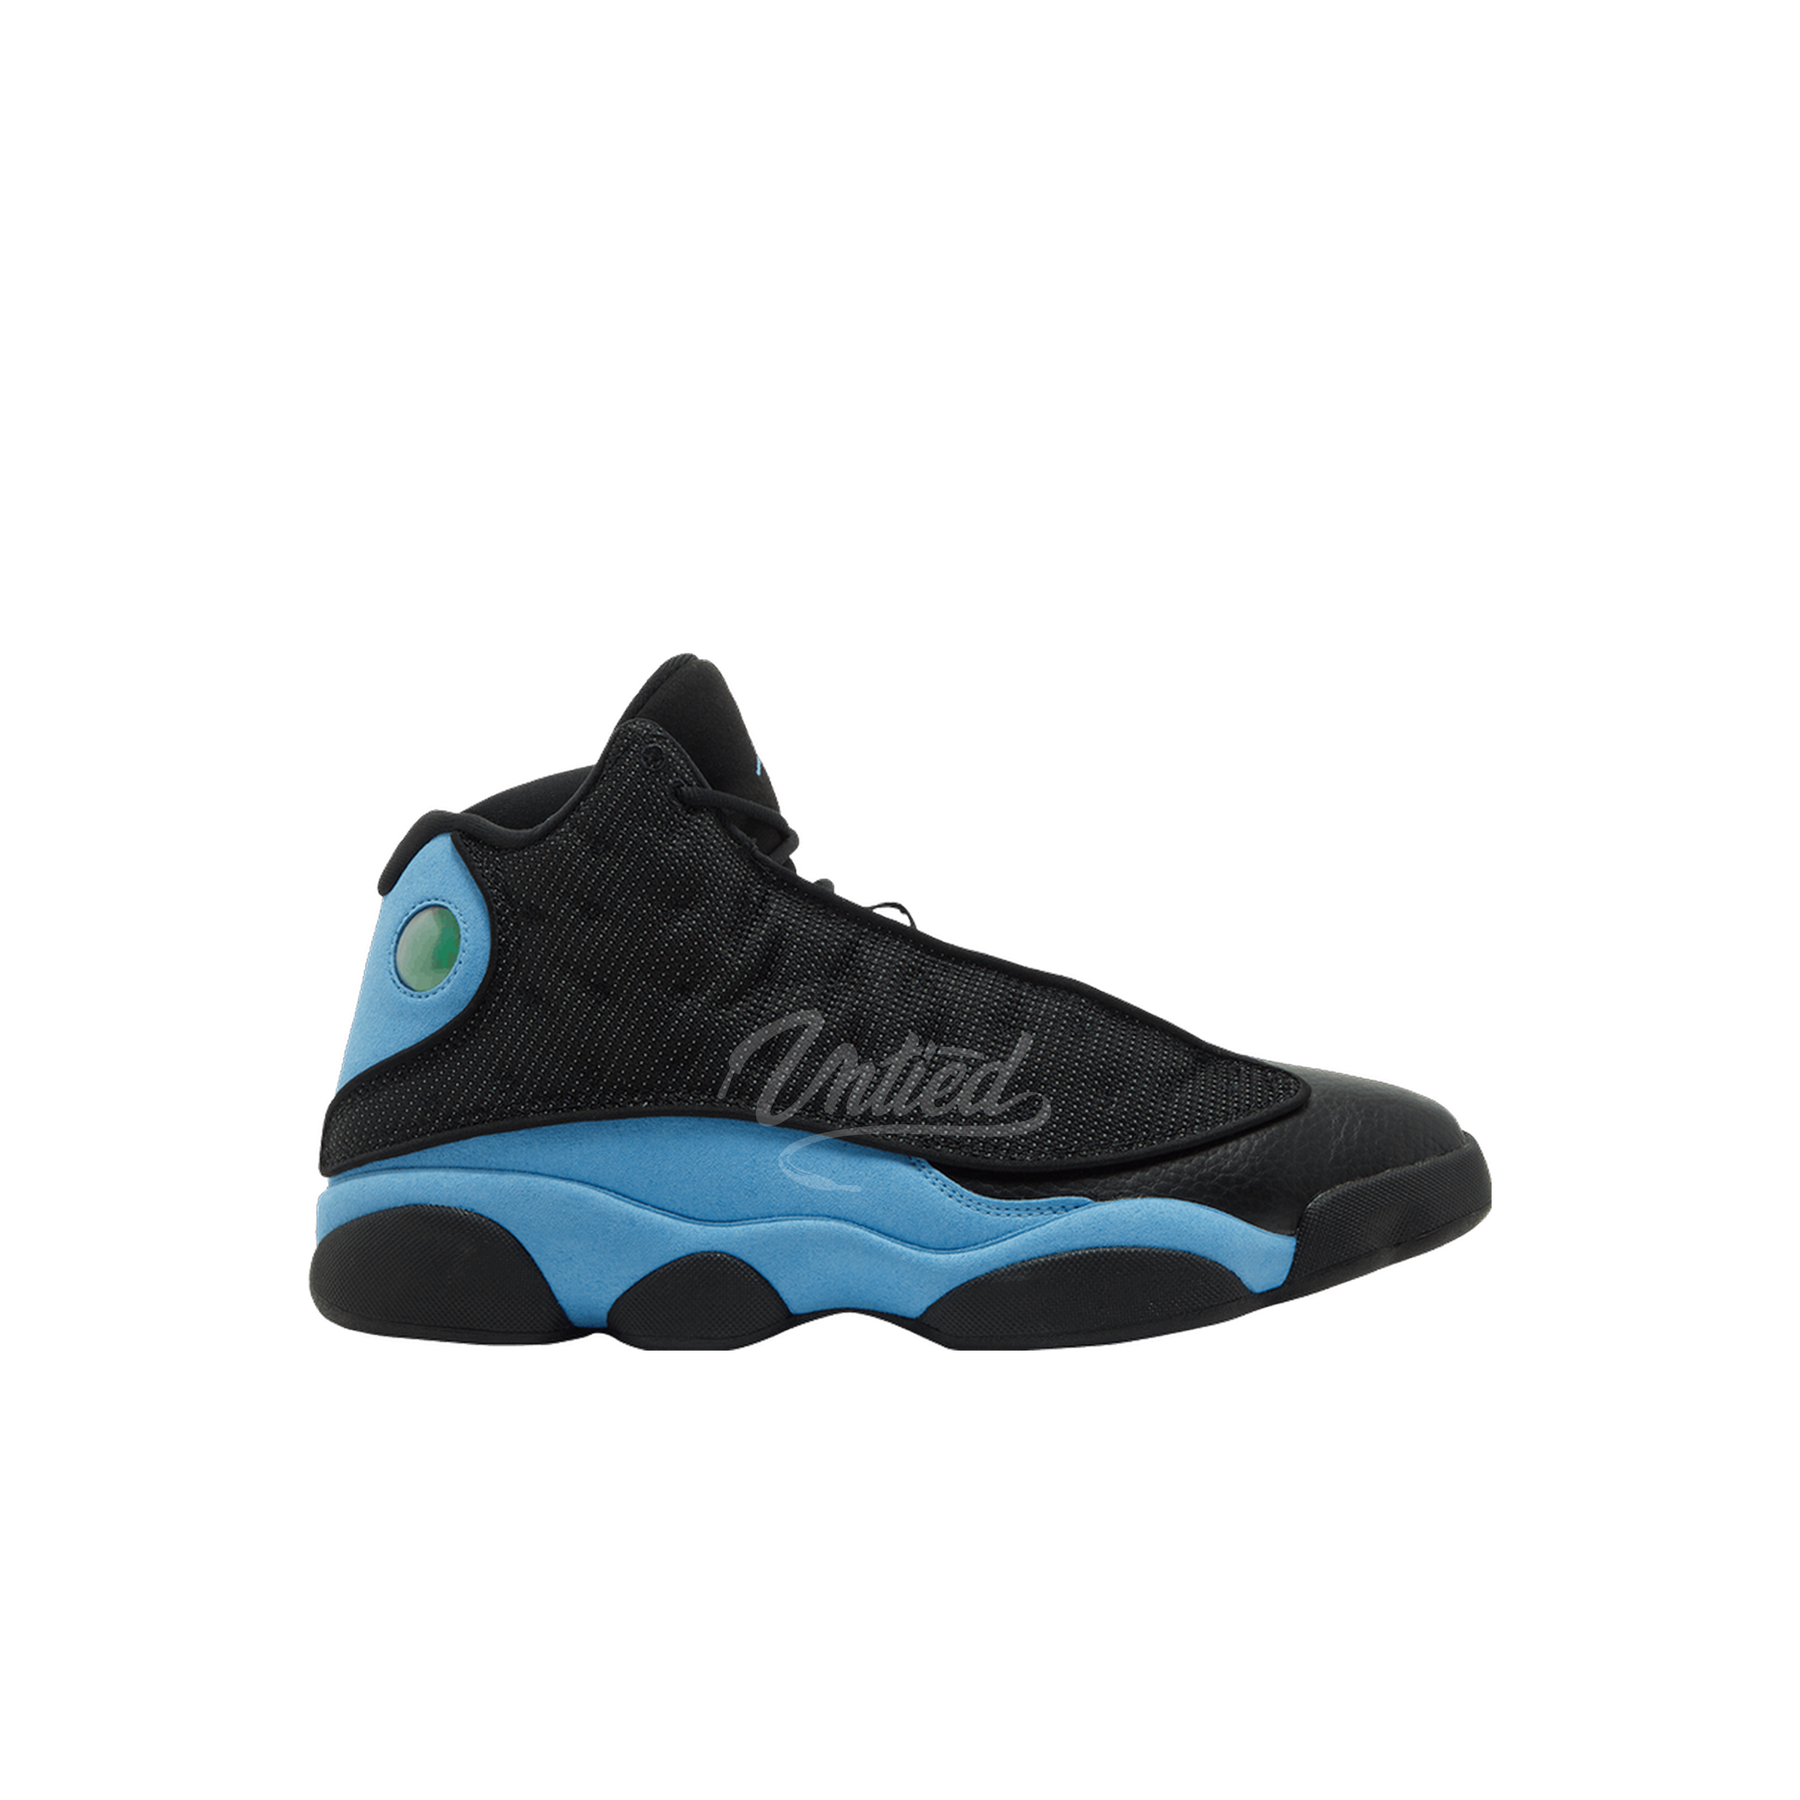 Air Jordan 13 "Black University Blue"